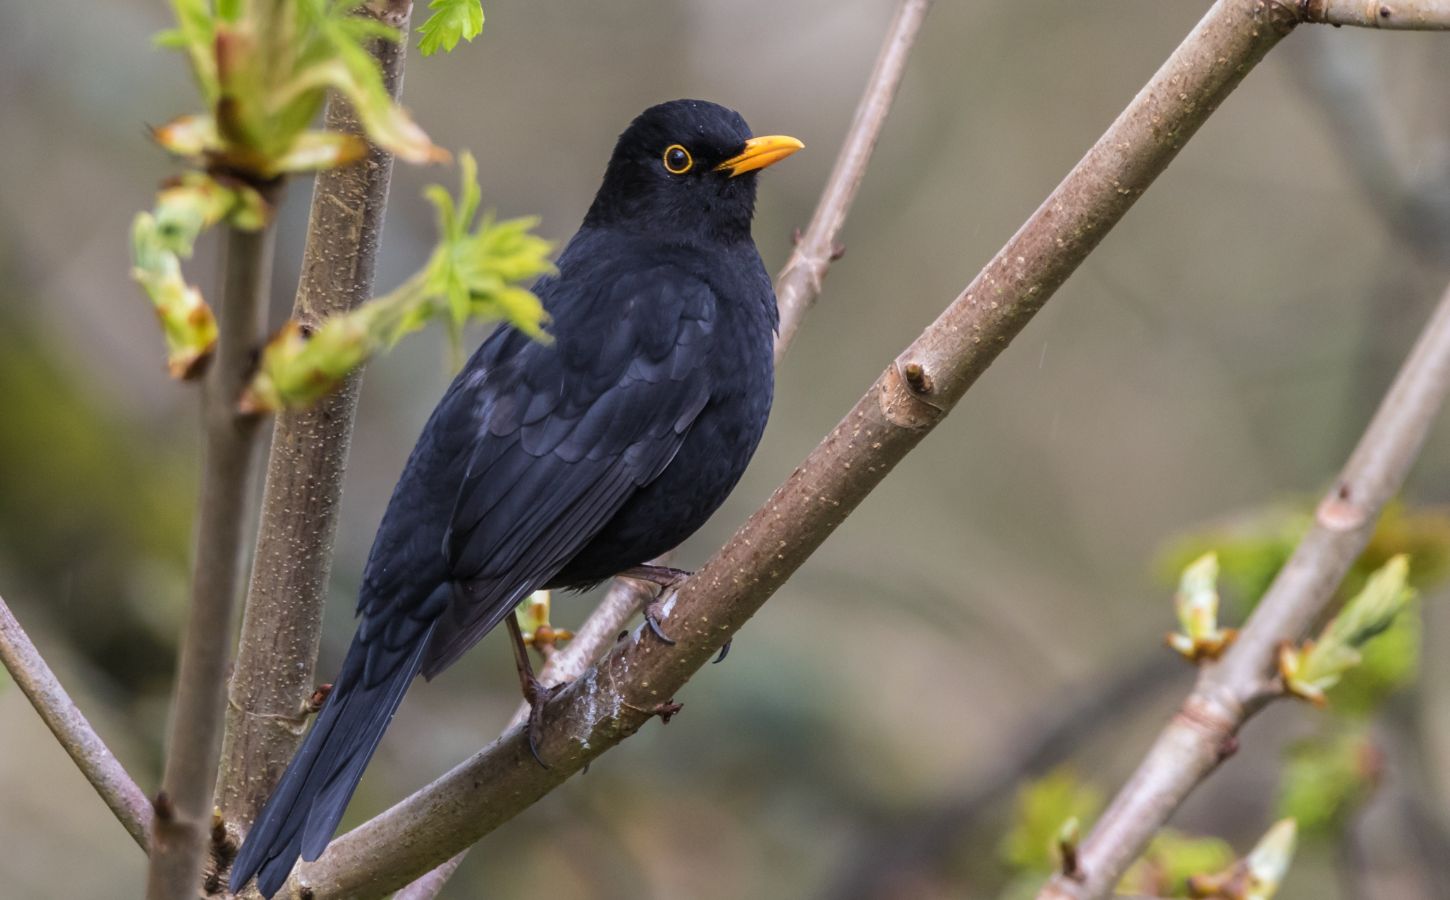 A blackbird